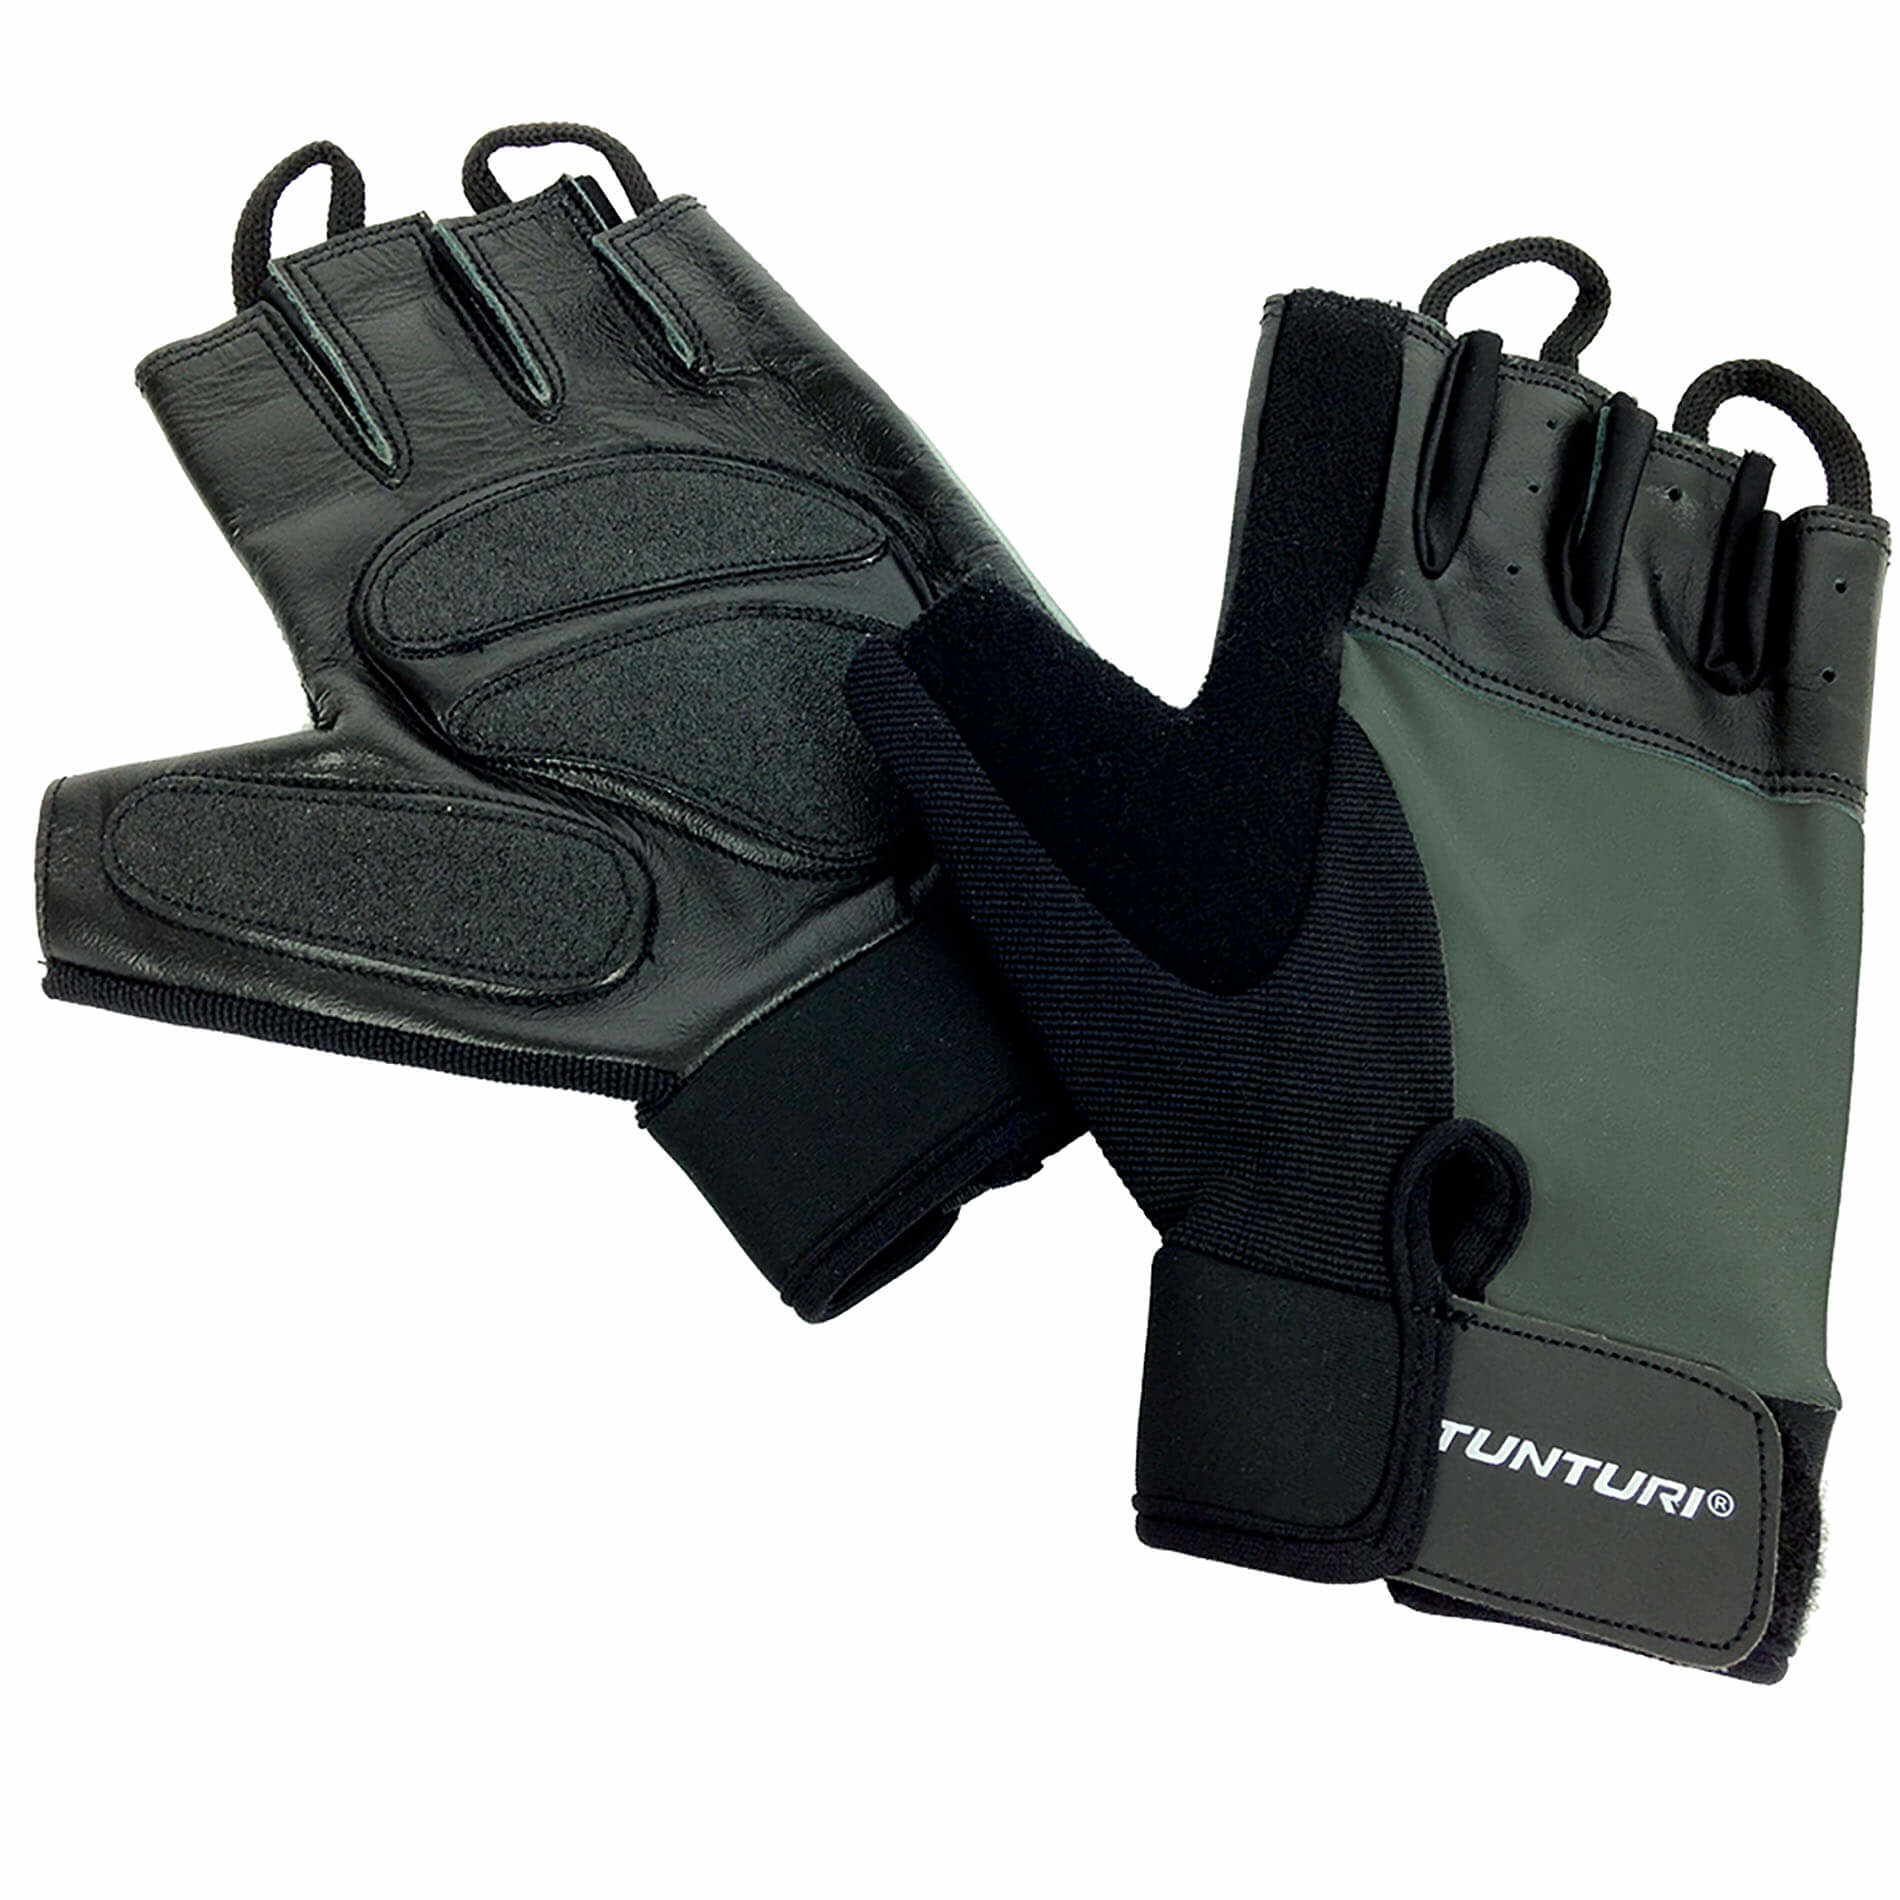 opwinding Airco Tegenhanger Fitness Gloves Pro Gel - Tunturi Fitness